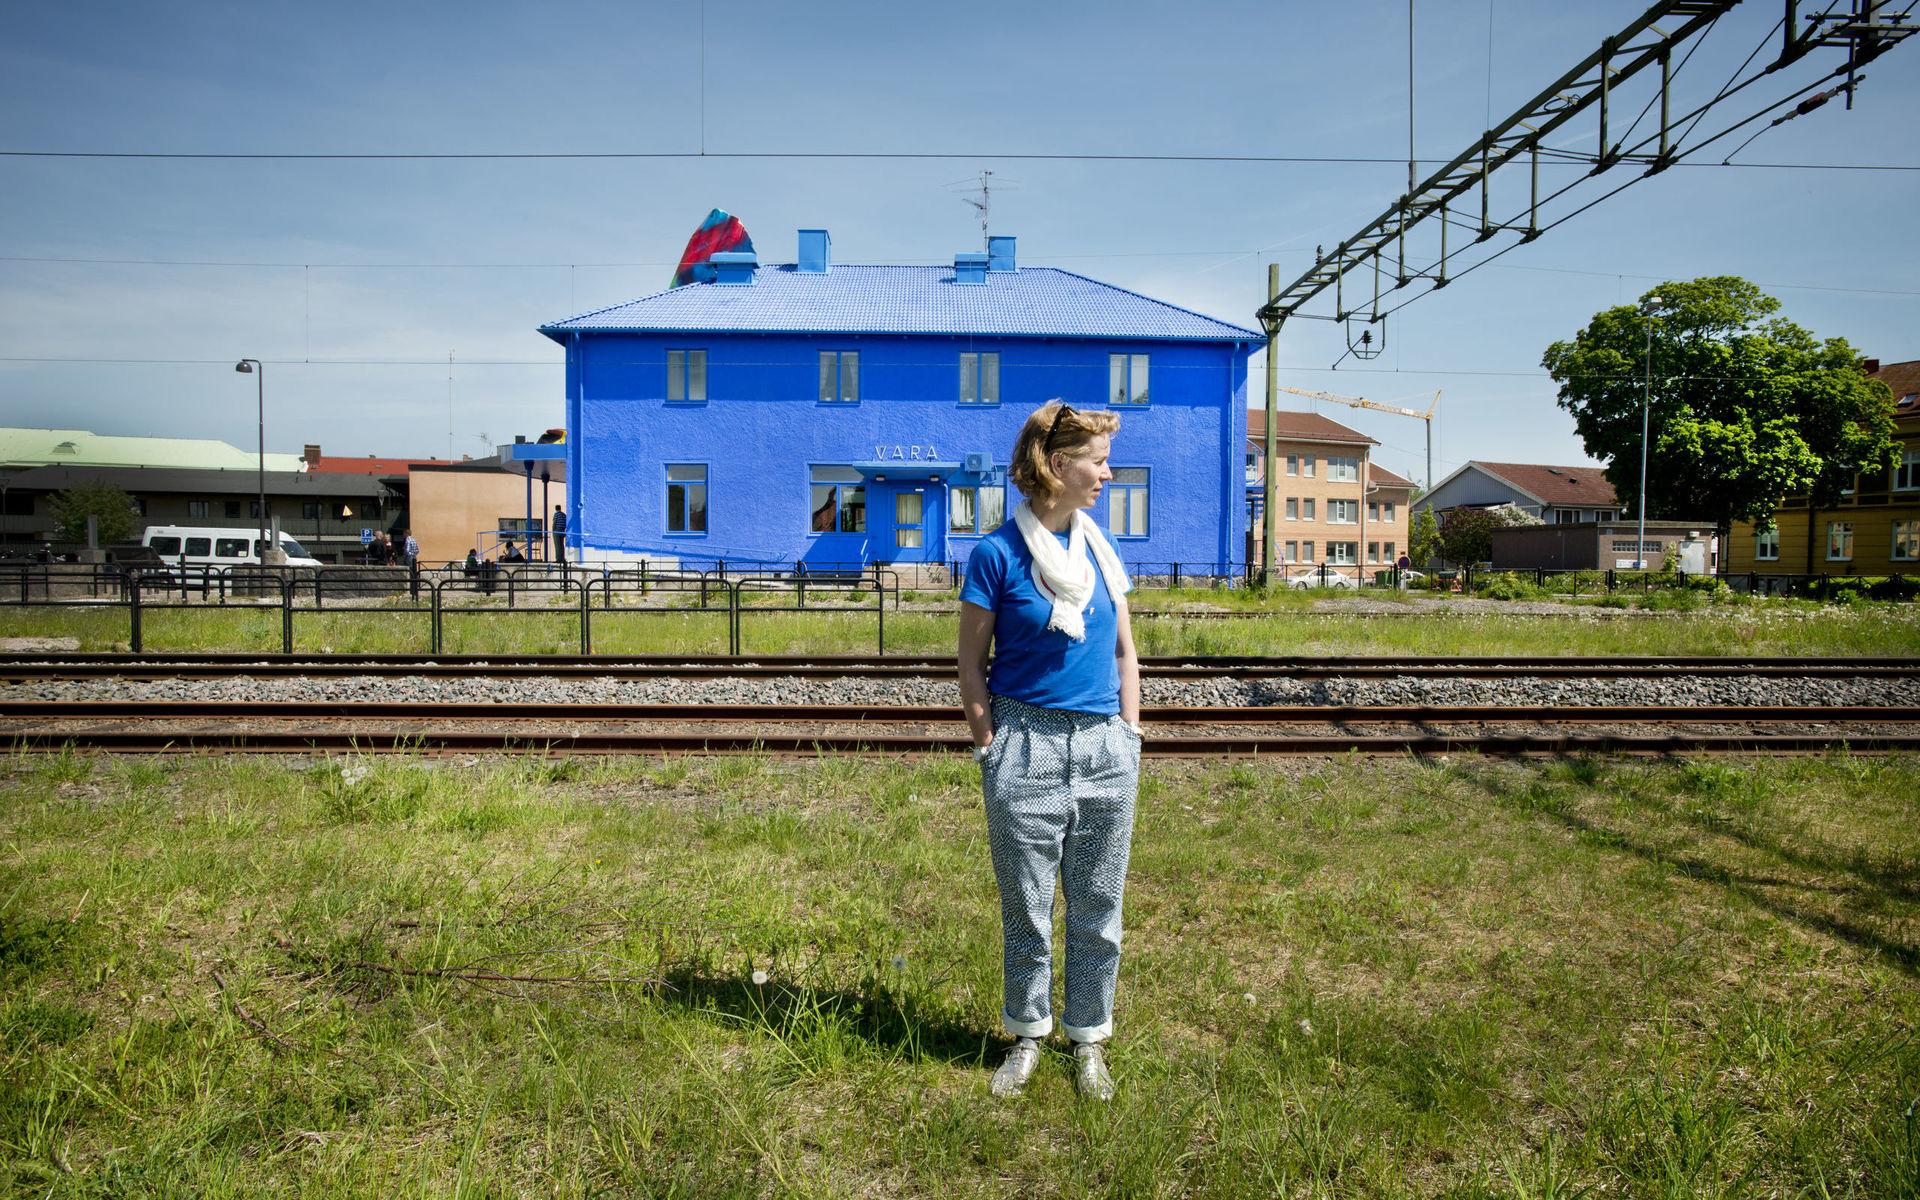 Katharina Grosse har redan varit verksam i Sverige vid flera tillfällen. 2012 förvandlade hon exempelvis Vara resecentrum till det gigantiska och färgsprakande konstverket <em id="emphasis-8c57187d44185162de49f960ea19a584">Blue Orange</em>.